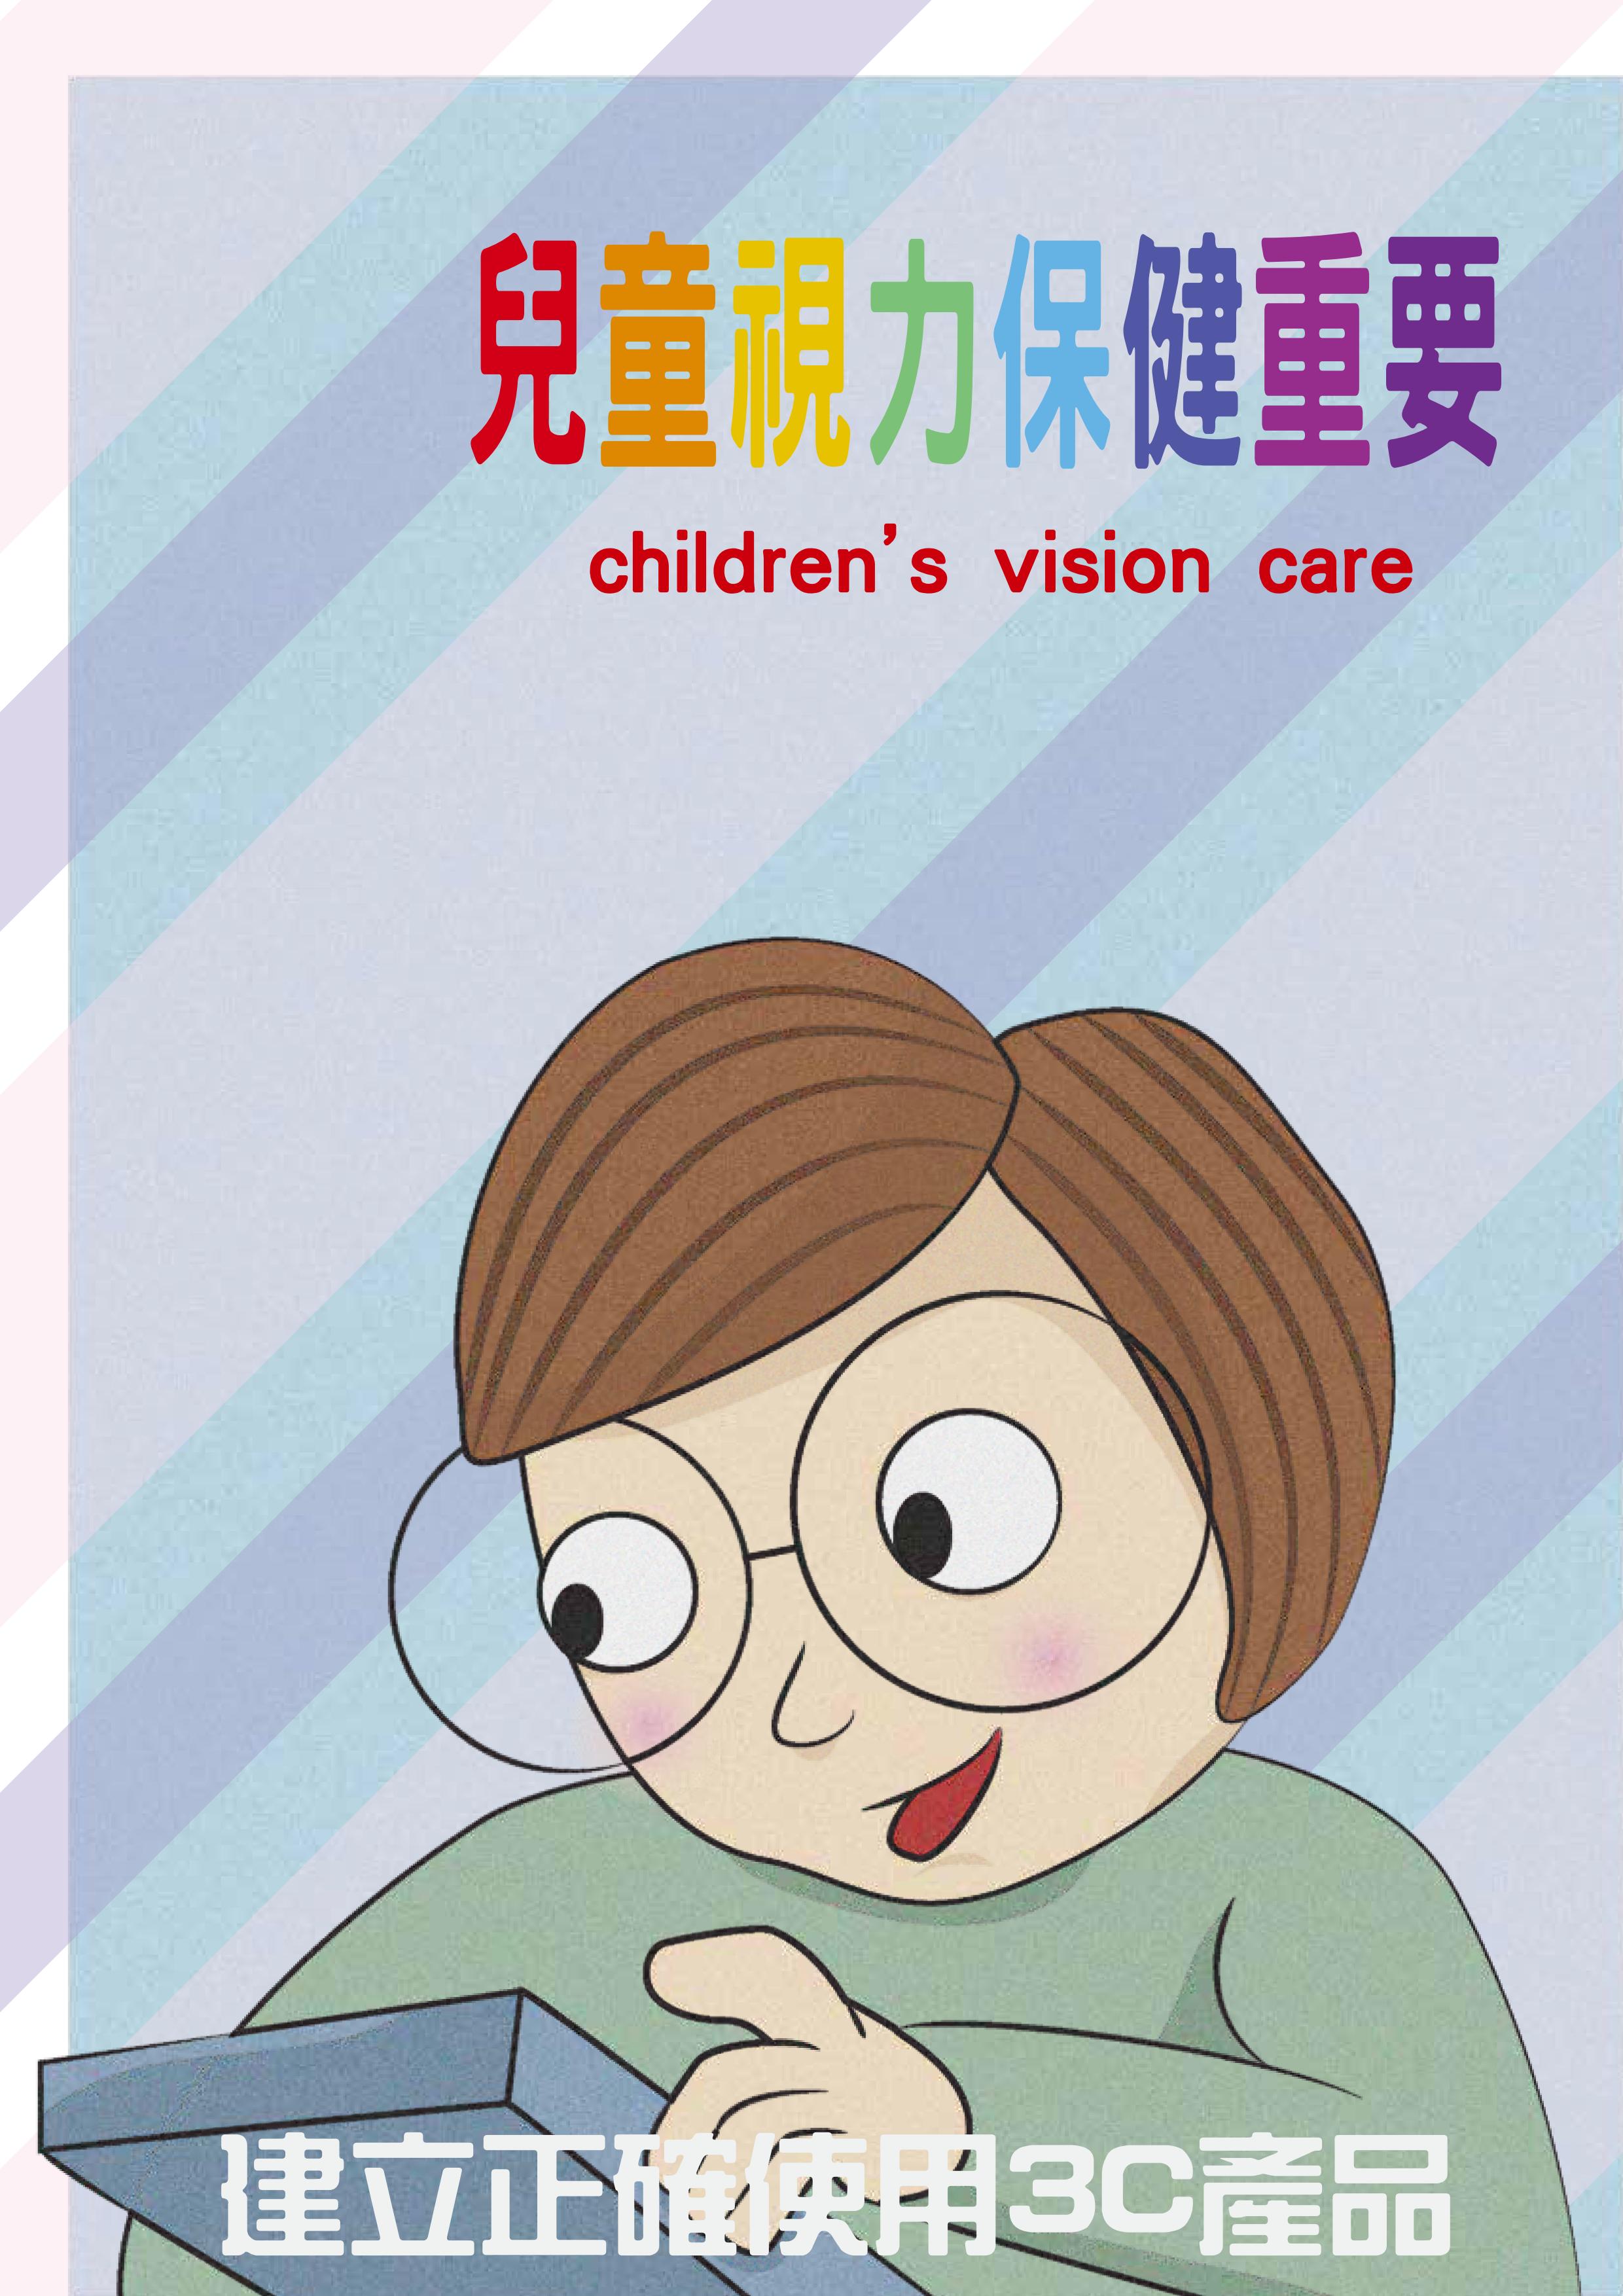 兒童視力保健重要-建立正確使用3C產品正確觀念文章照片